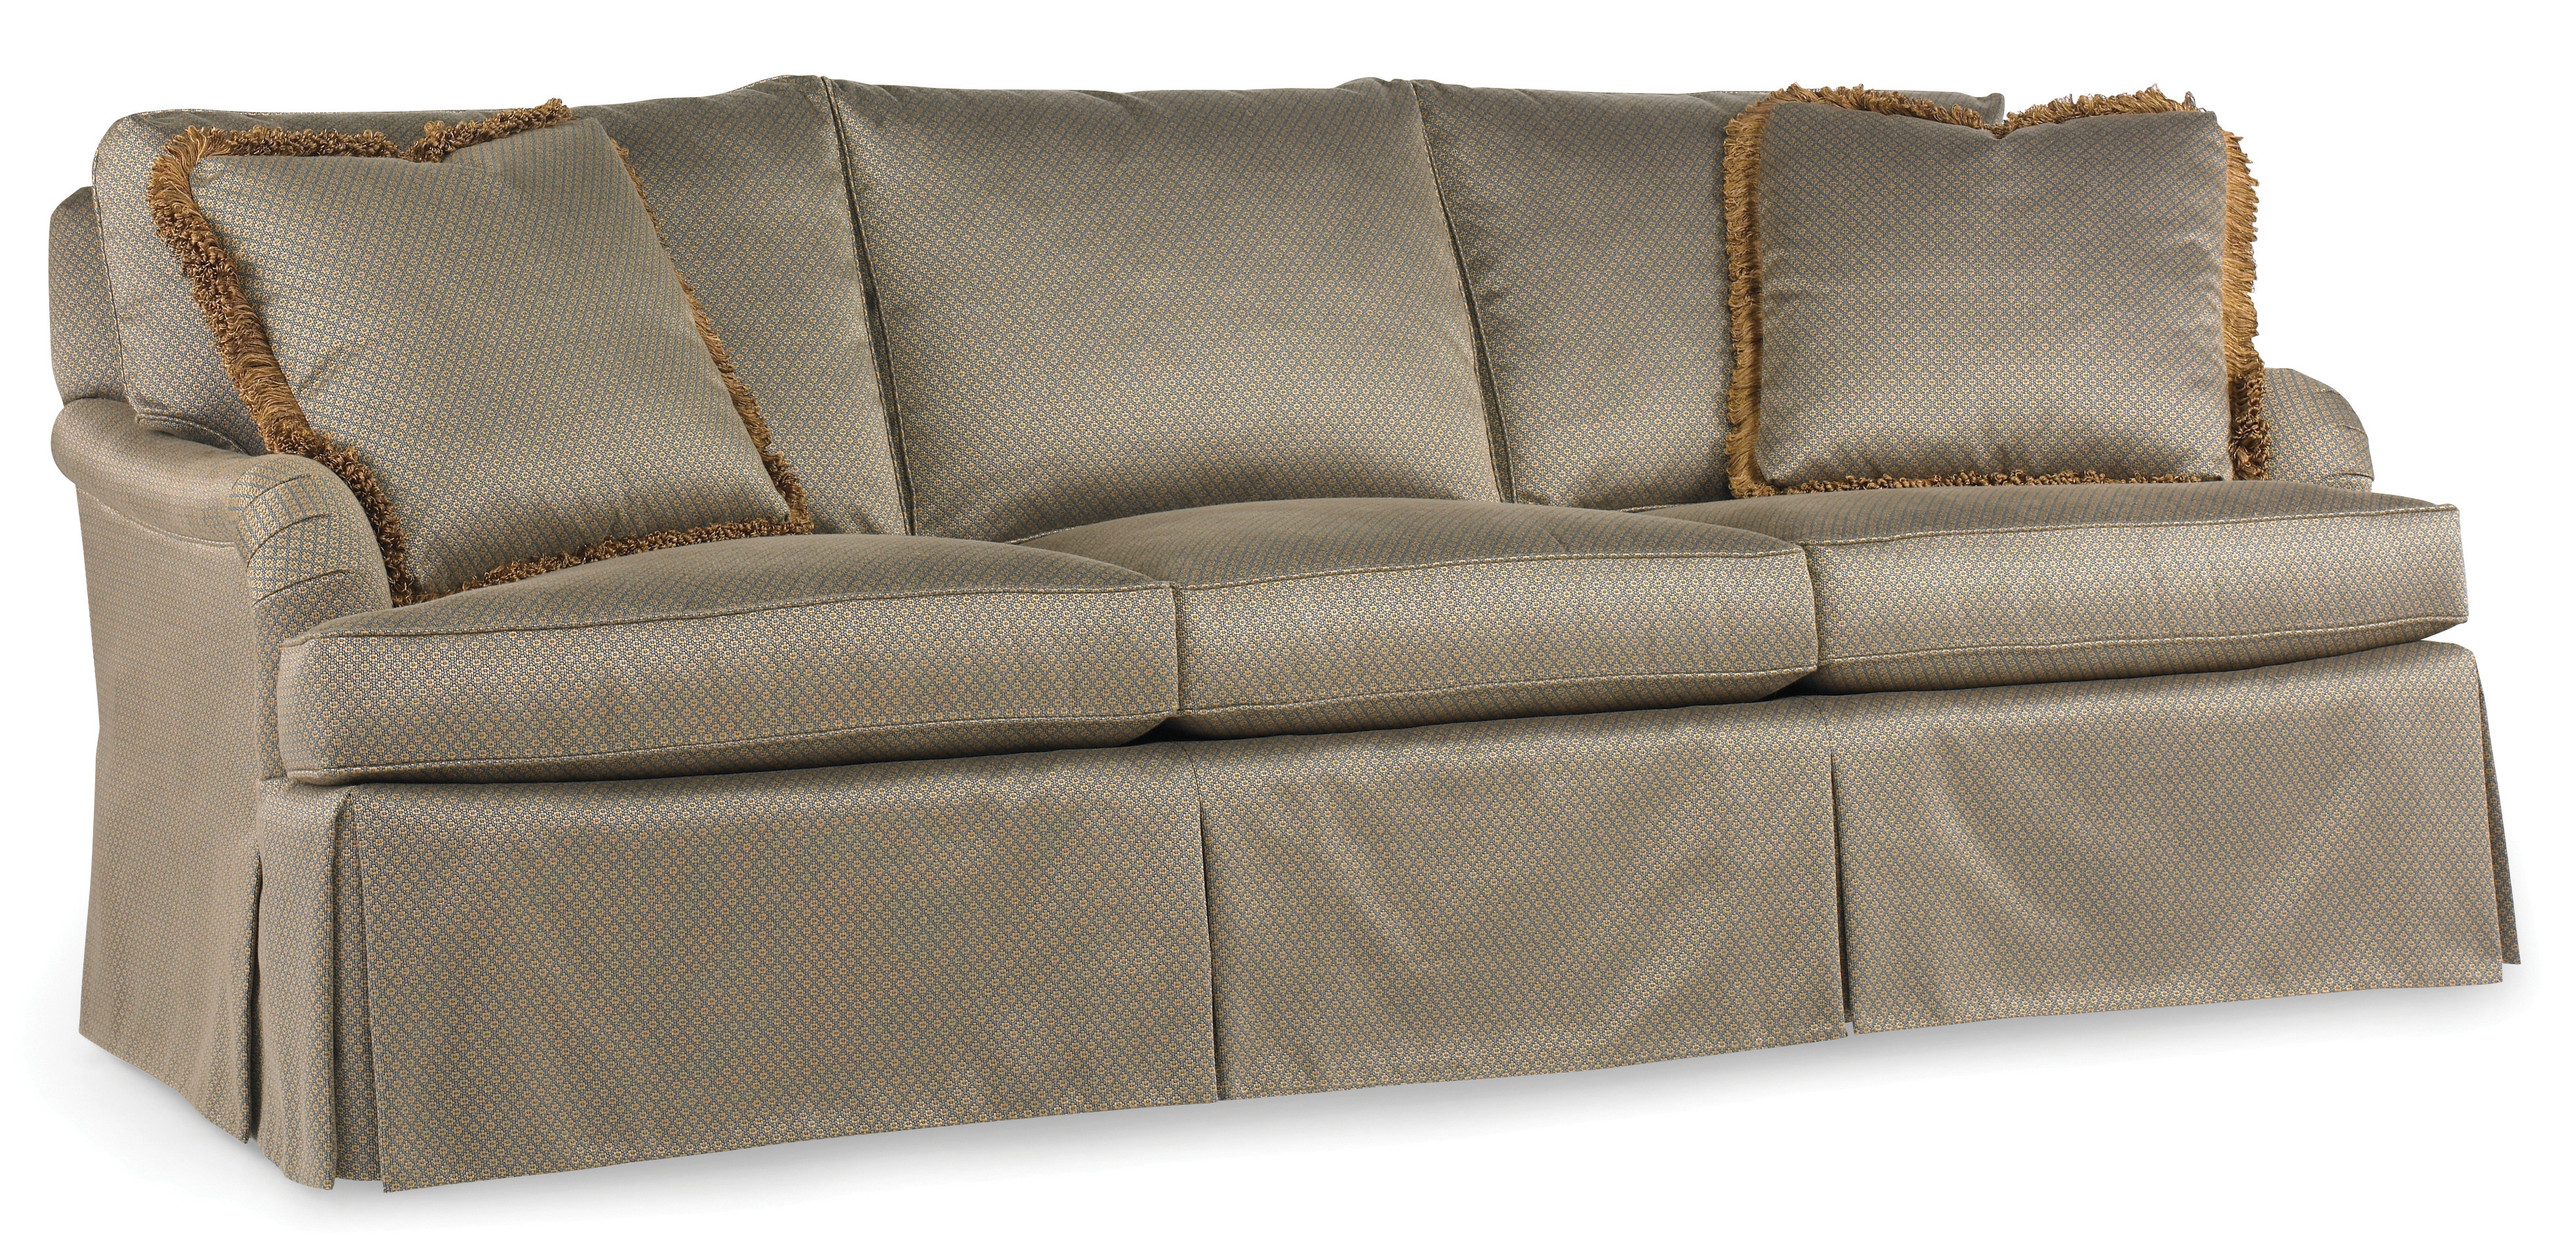 carlisle sofa bed target